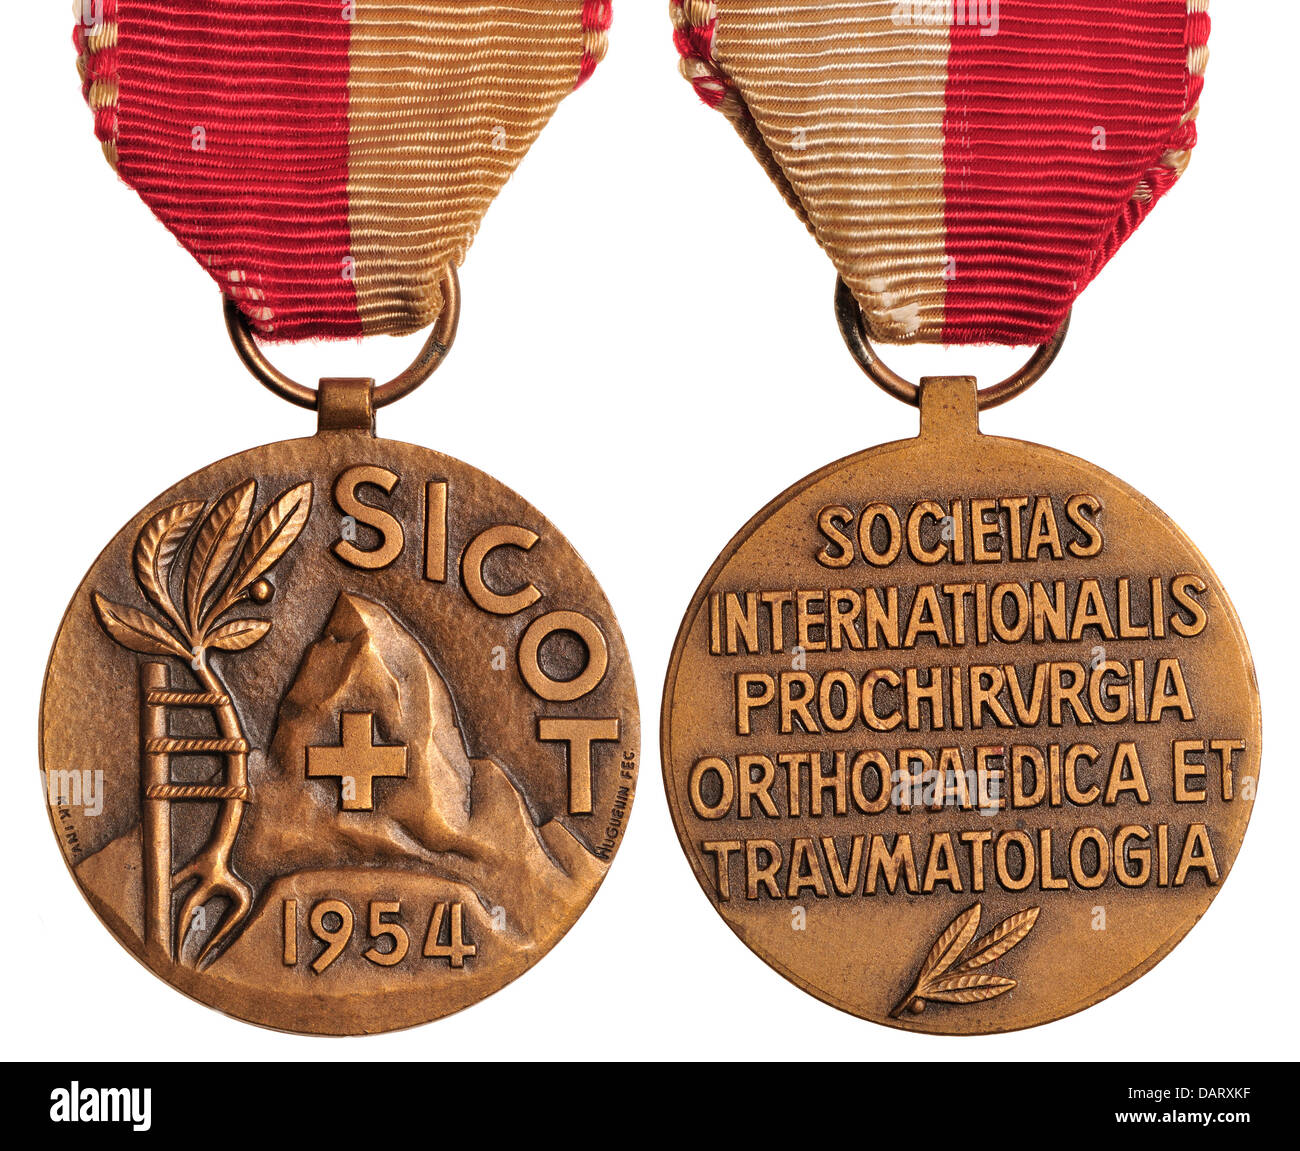 SICOT Médaille - Société Internationale de chirurgie orthopédique et traumatologie. La commémoration de 1954 Conférence tenue à Berne Banque D'Images